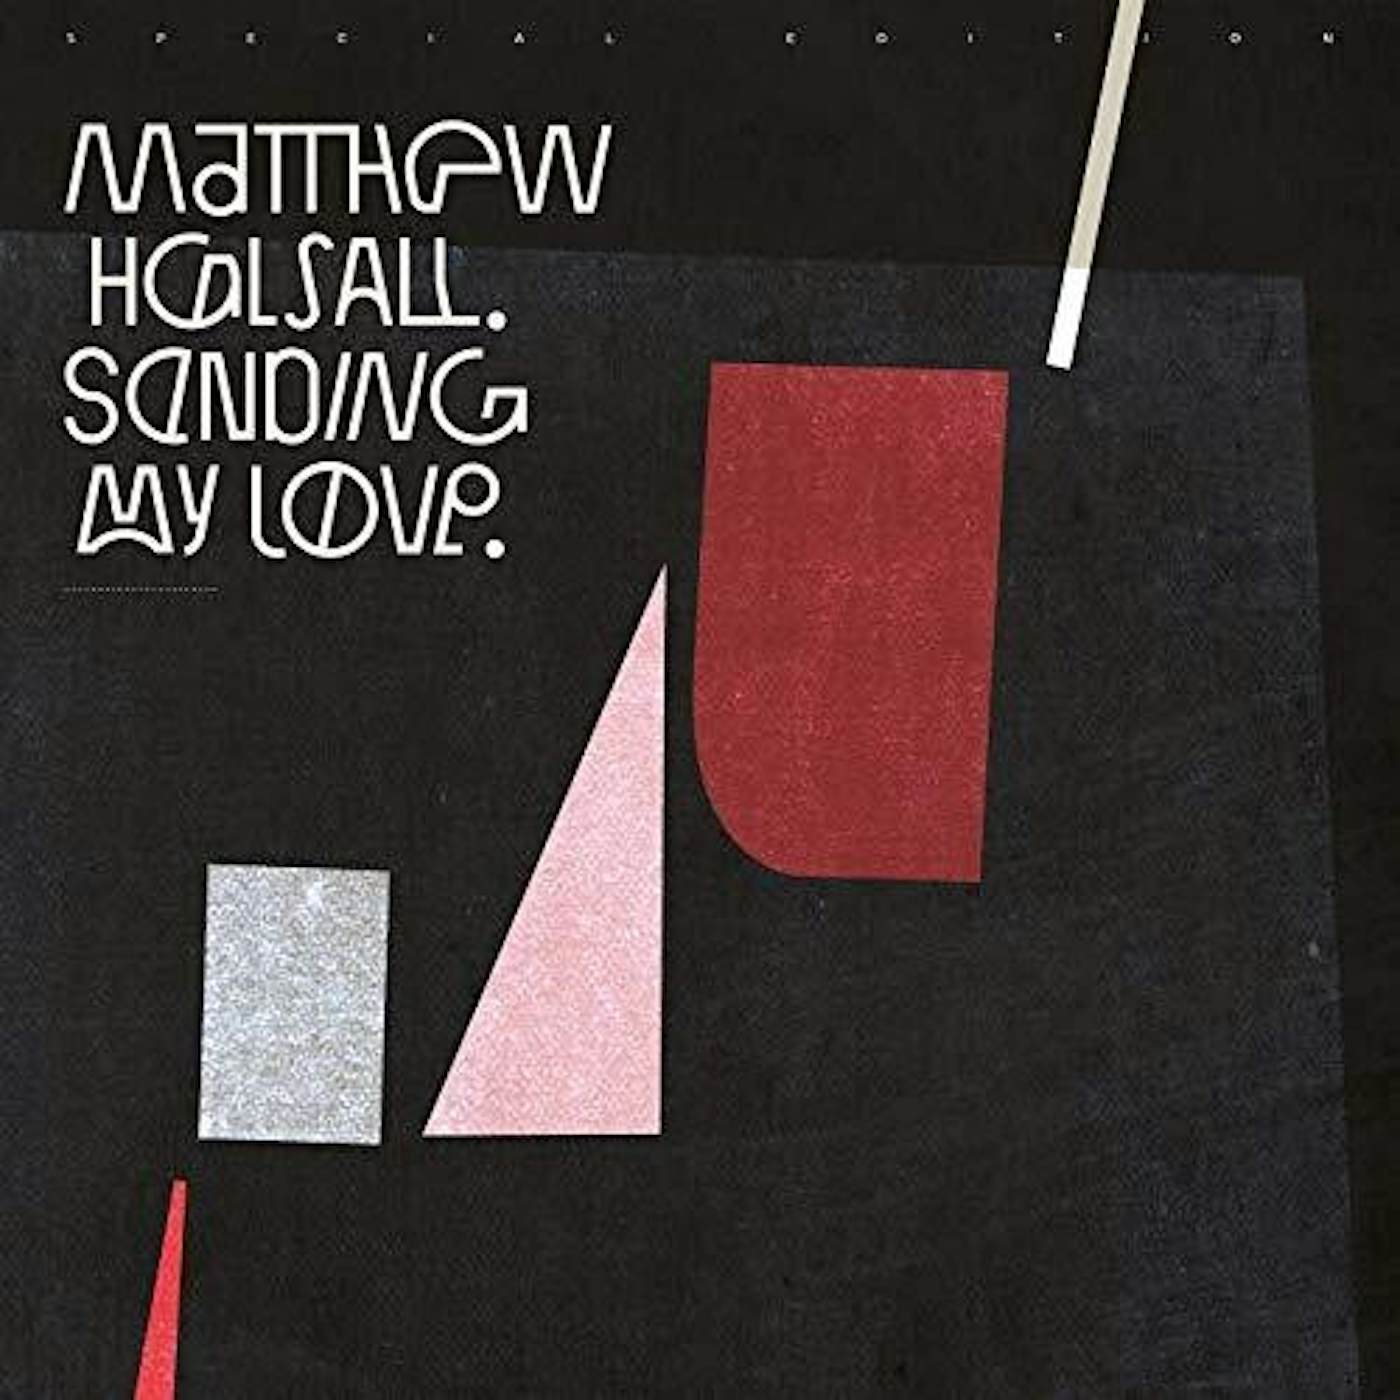 Matthew Halsall Sending My Love (Special Edition) Vinyl Record